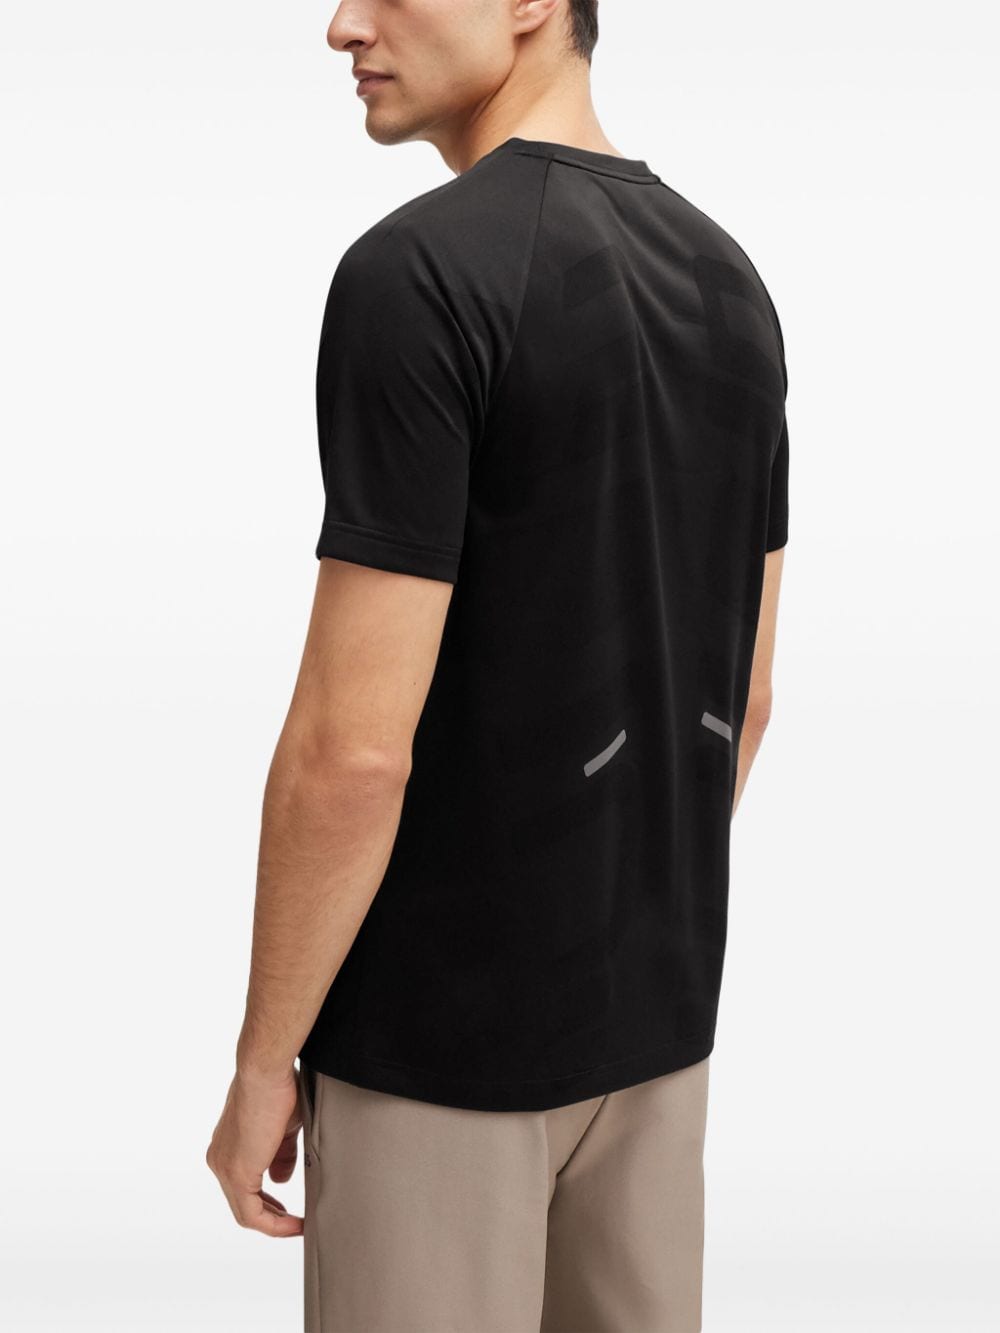 BOSS T-shirt met reflecterend logo Zwart